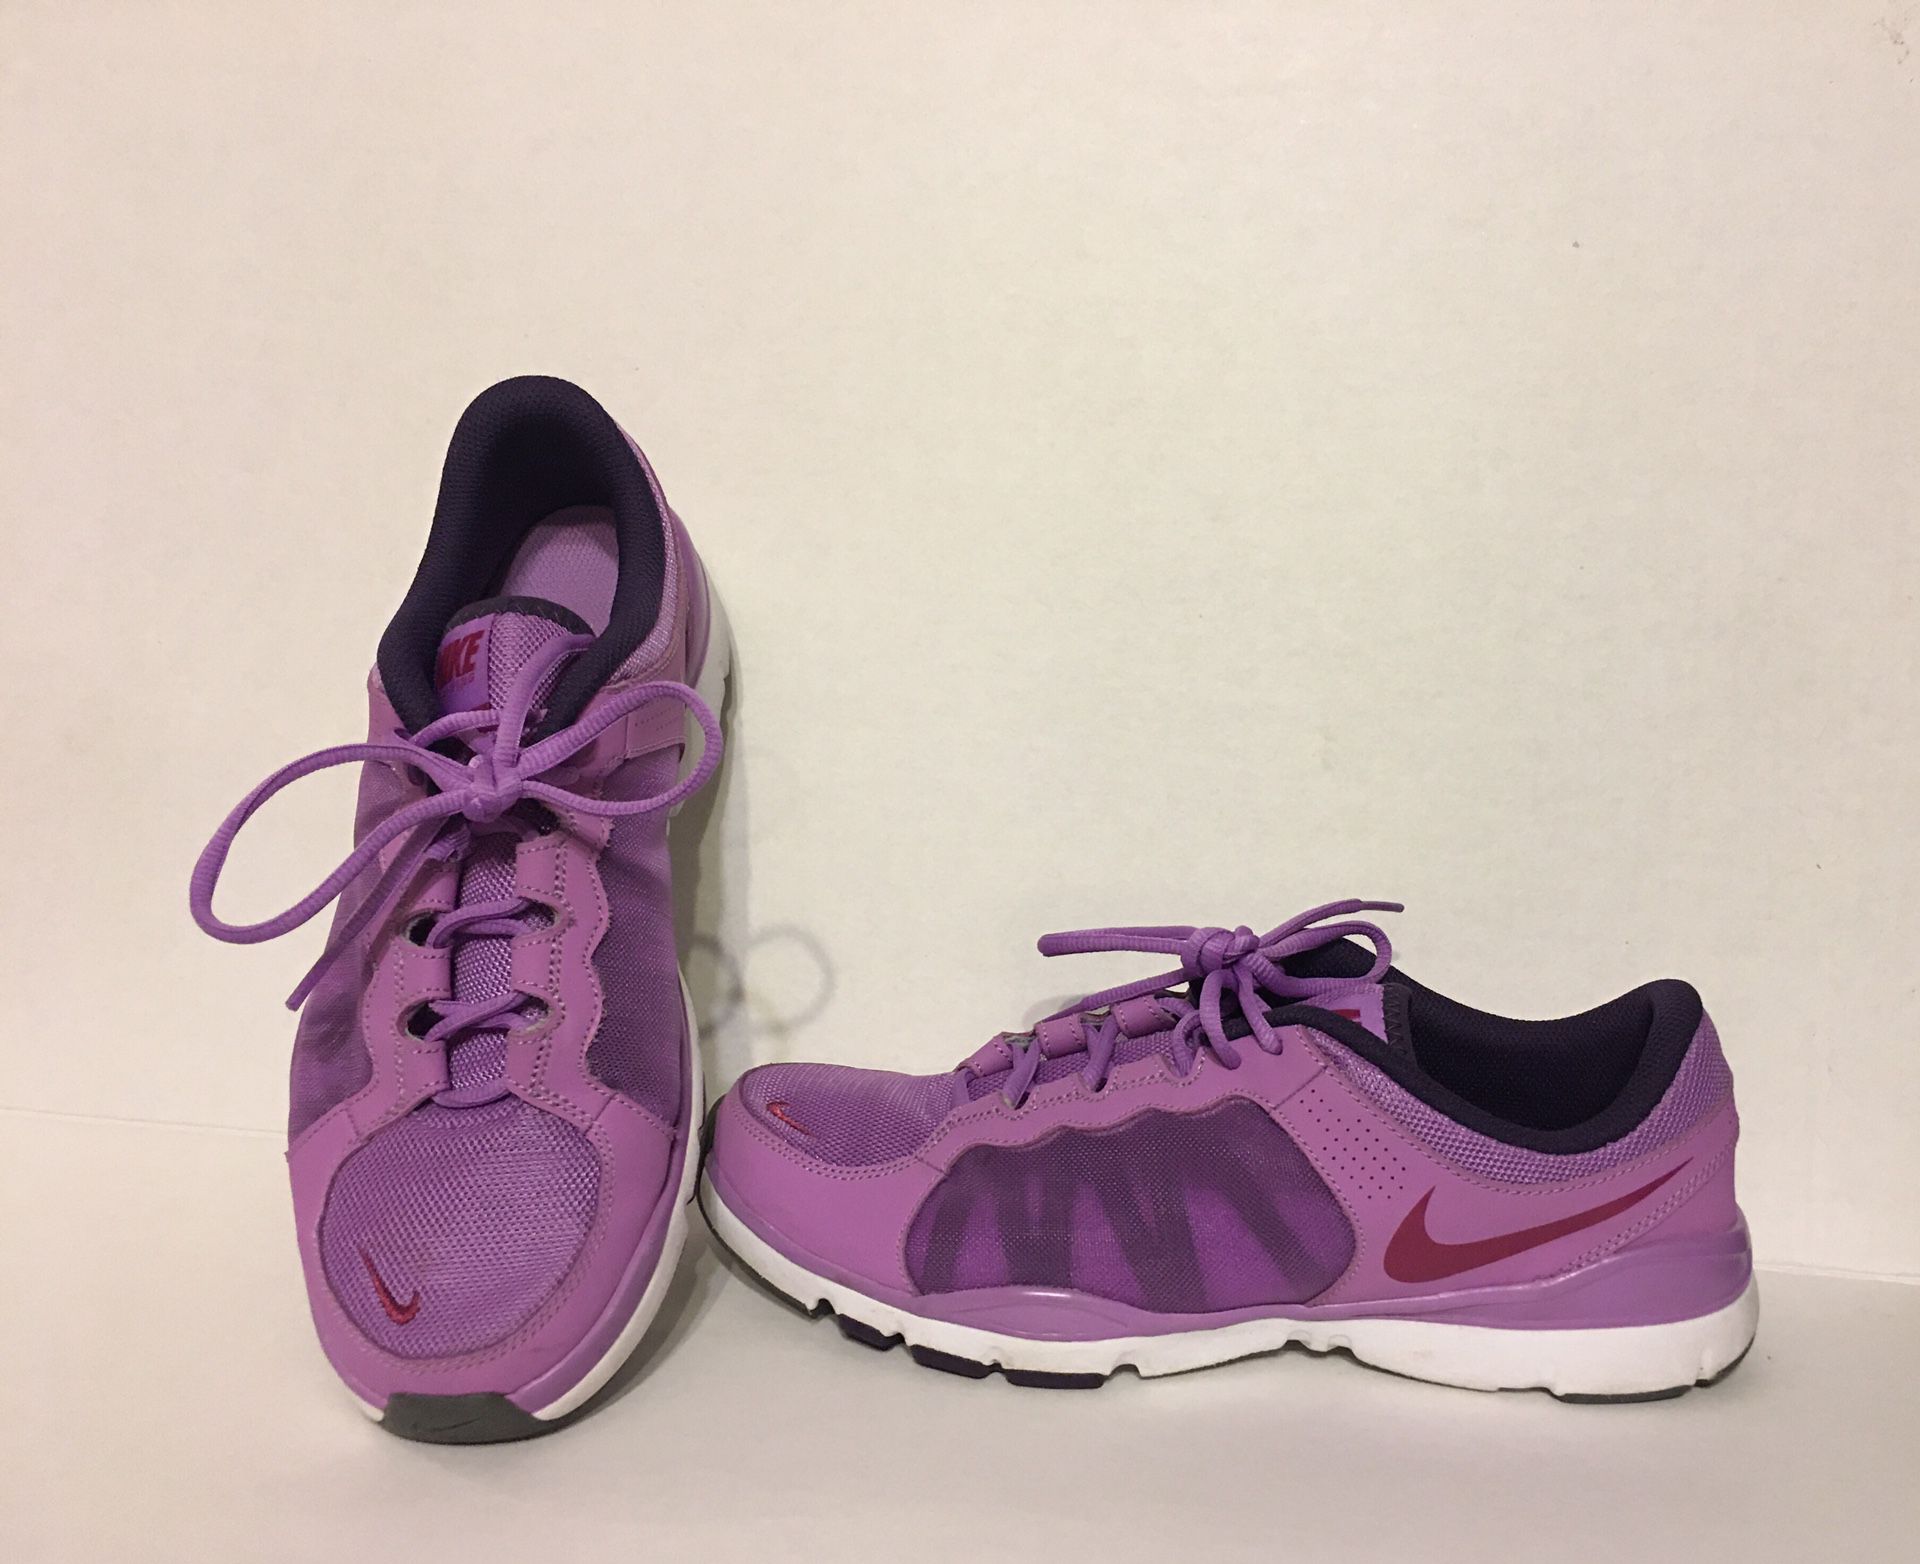 Ladies purple size 11 Nike sneaker/shoe